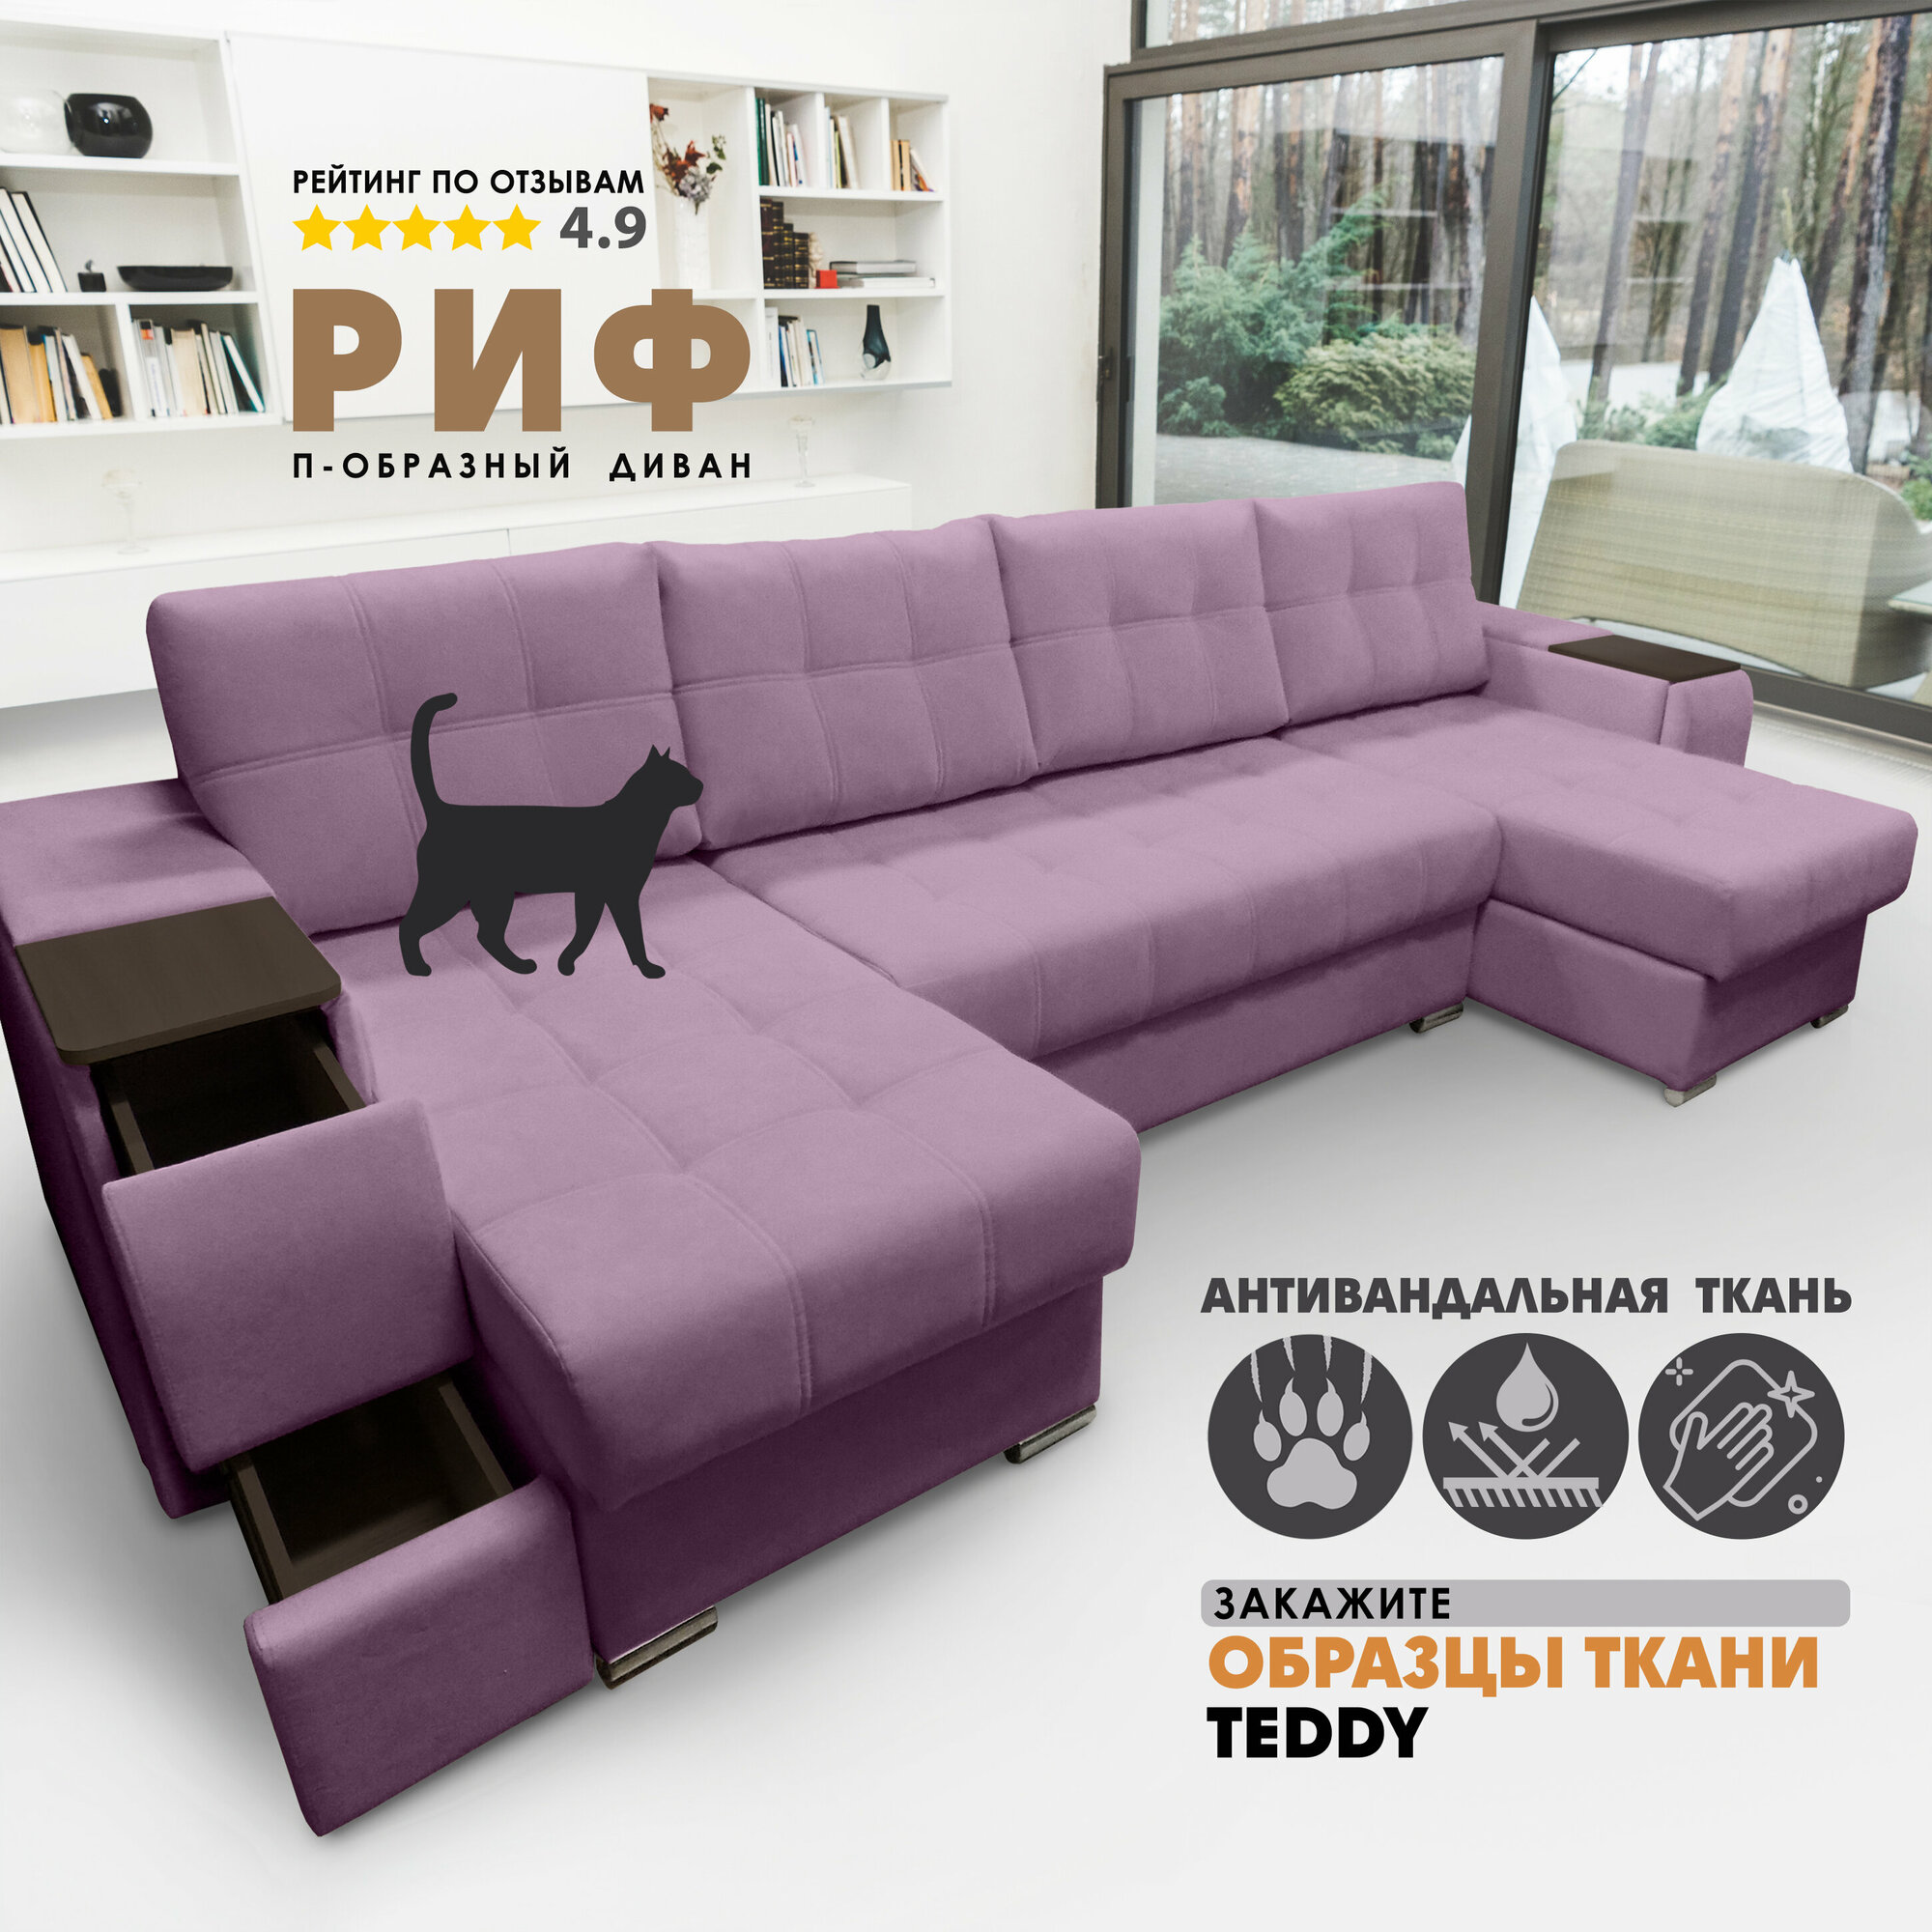 П-образный диван "Риф" Teddy 638 (накладки Венге)